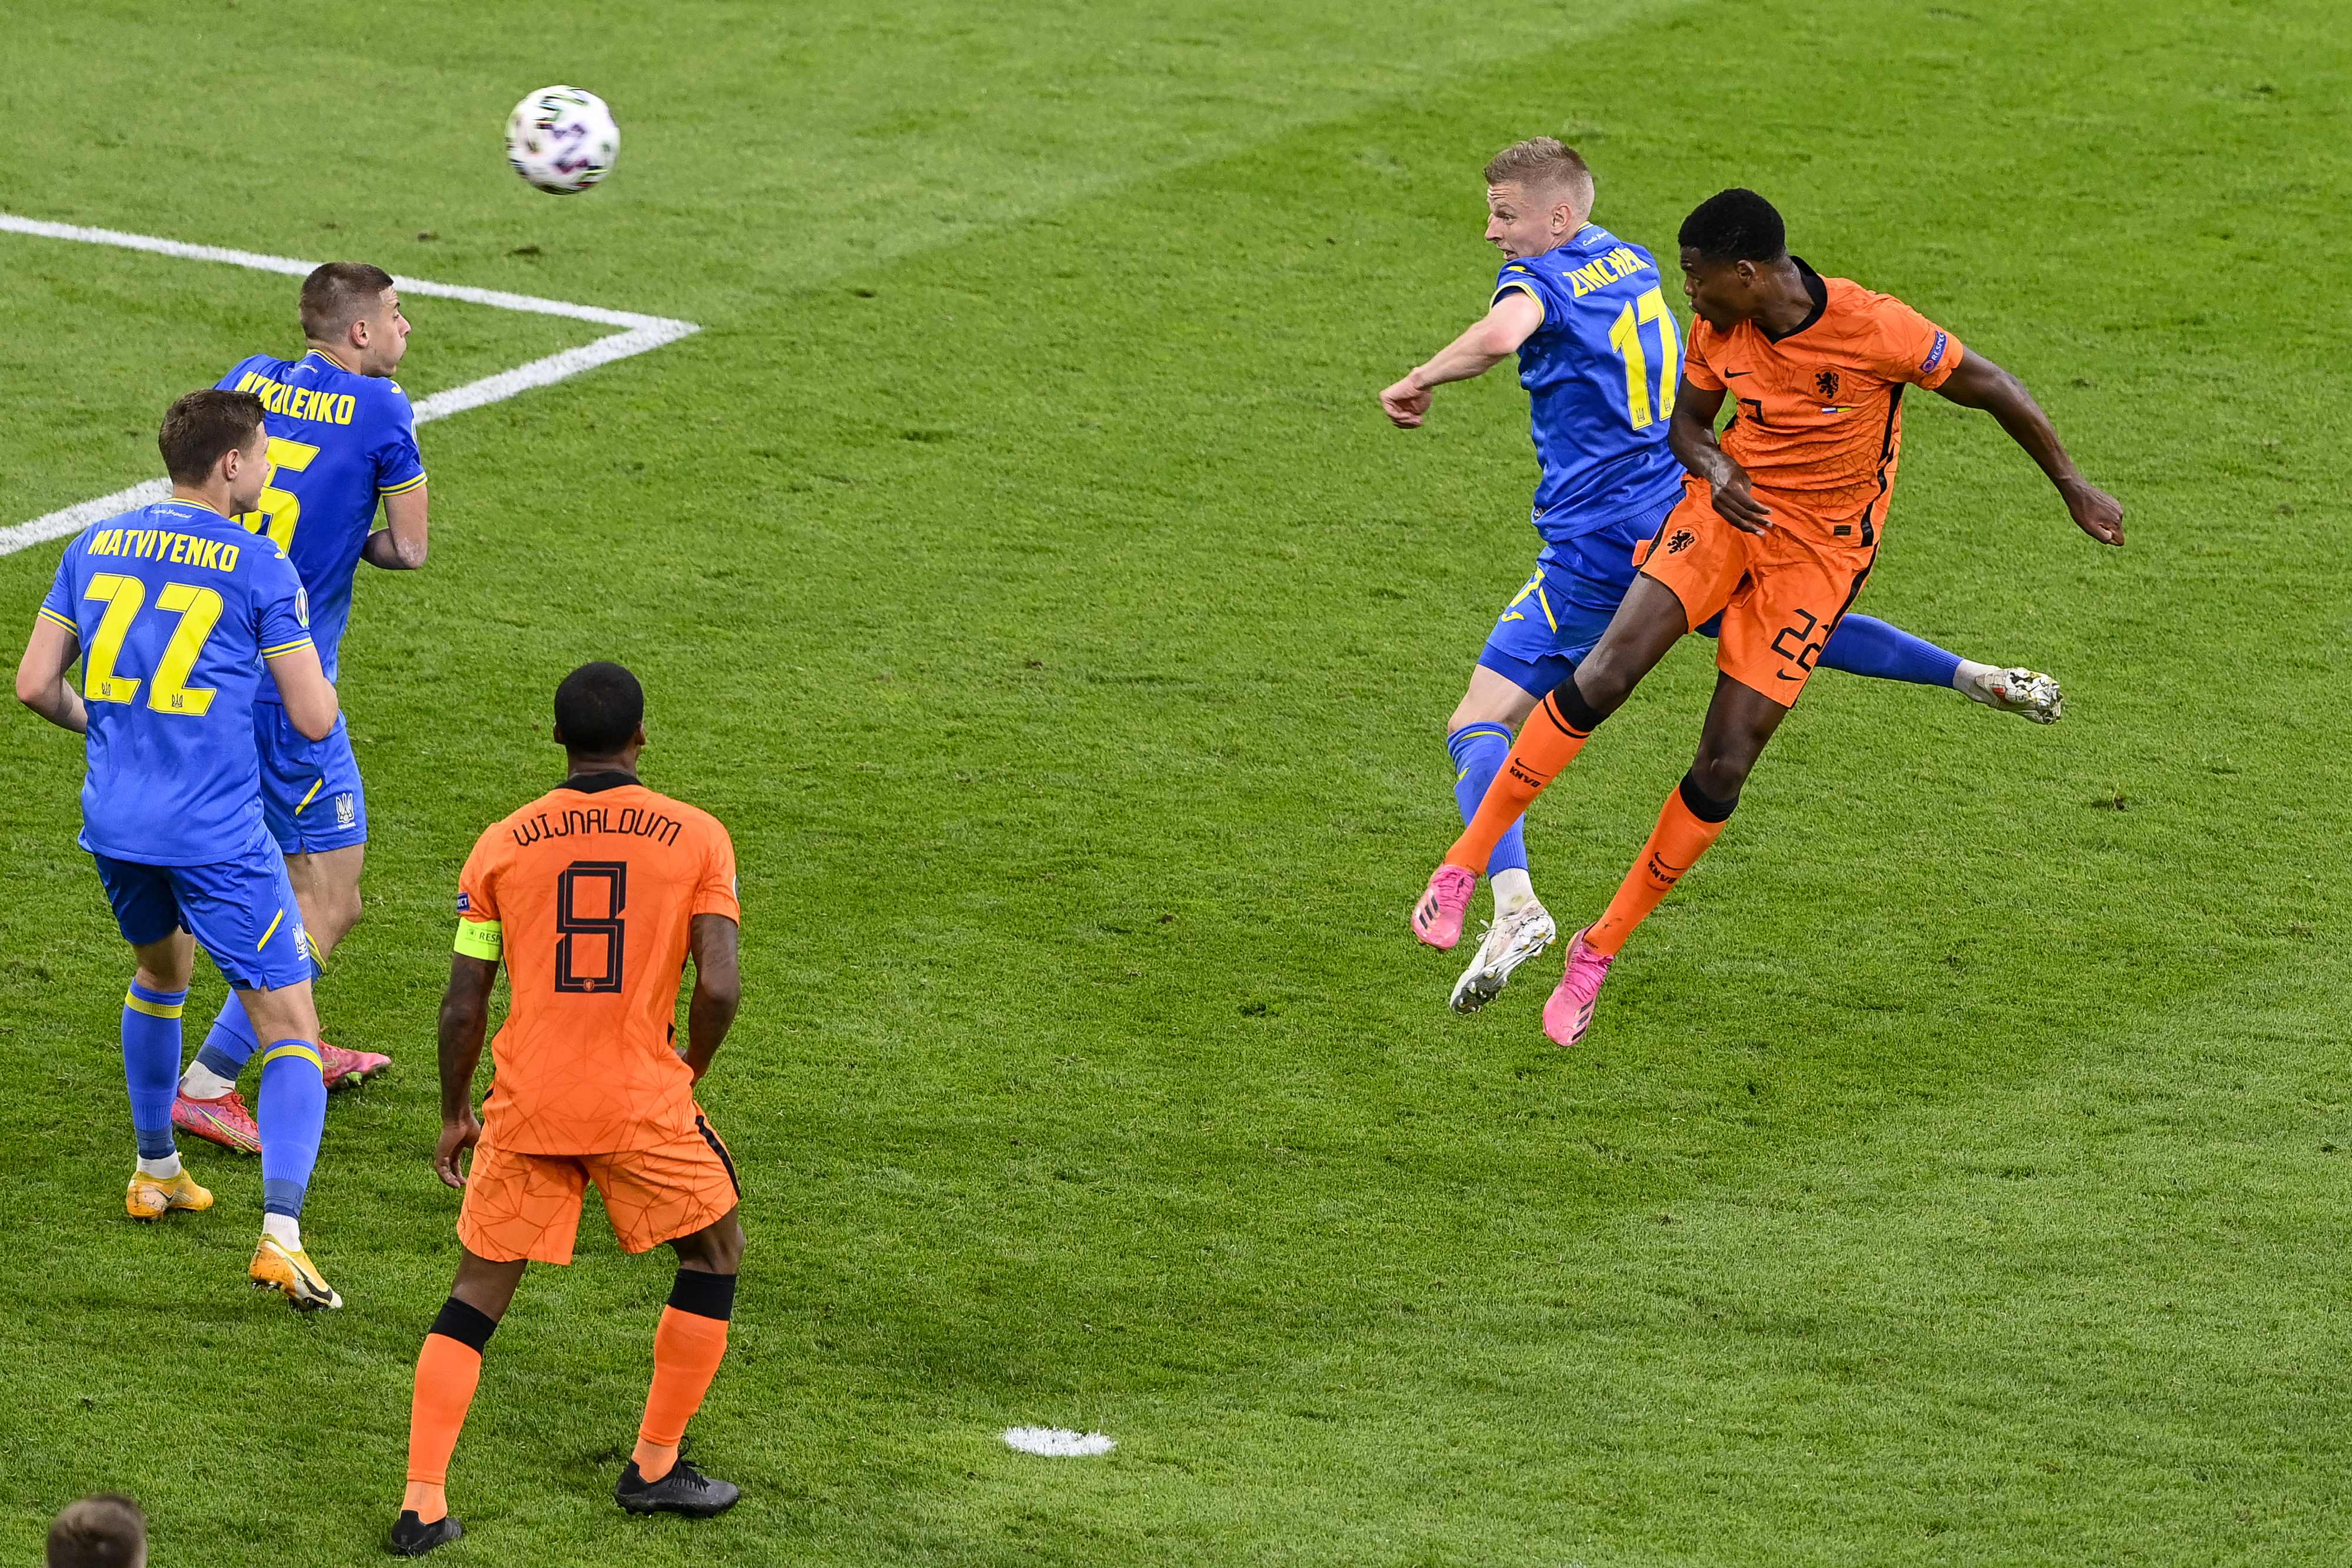 Euro 2020 : Les Pays-Bas s'imposent face à l'Ukraine (3-2)